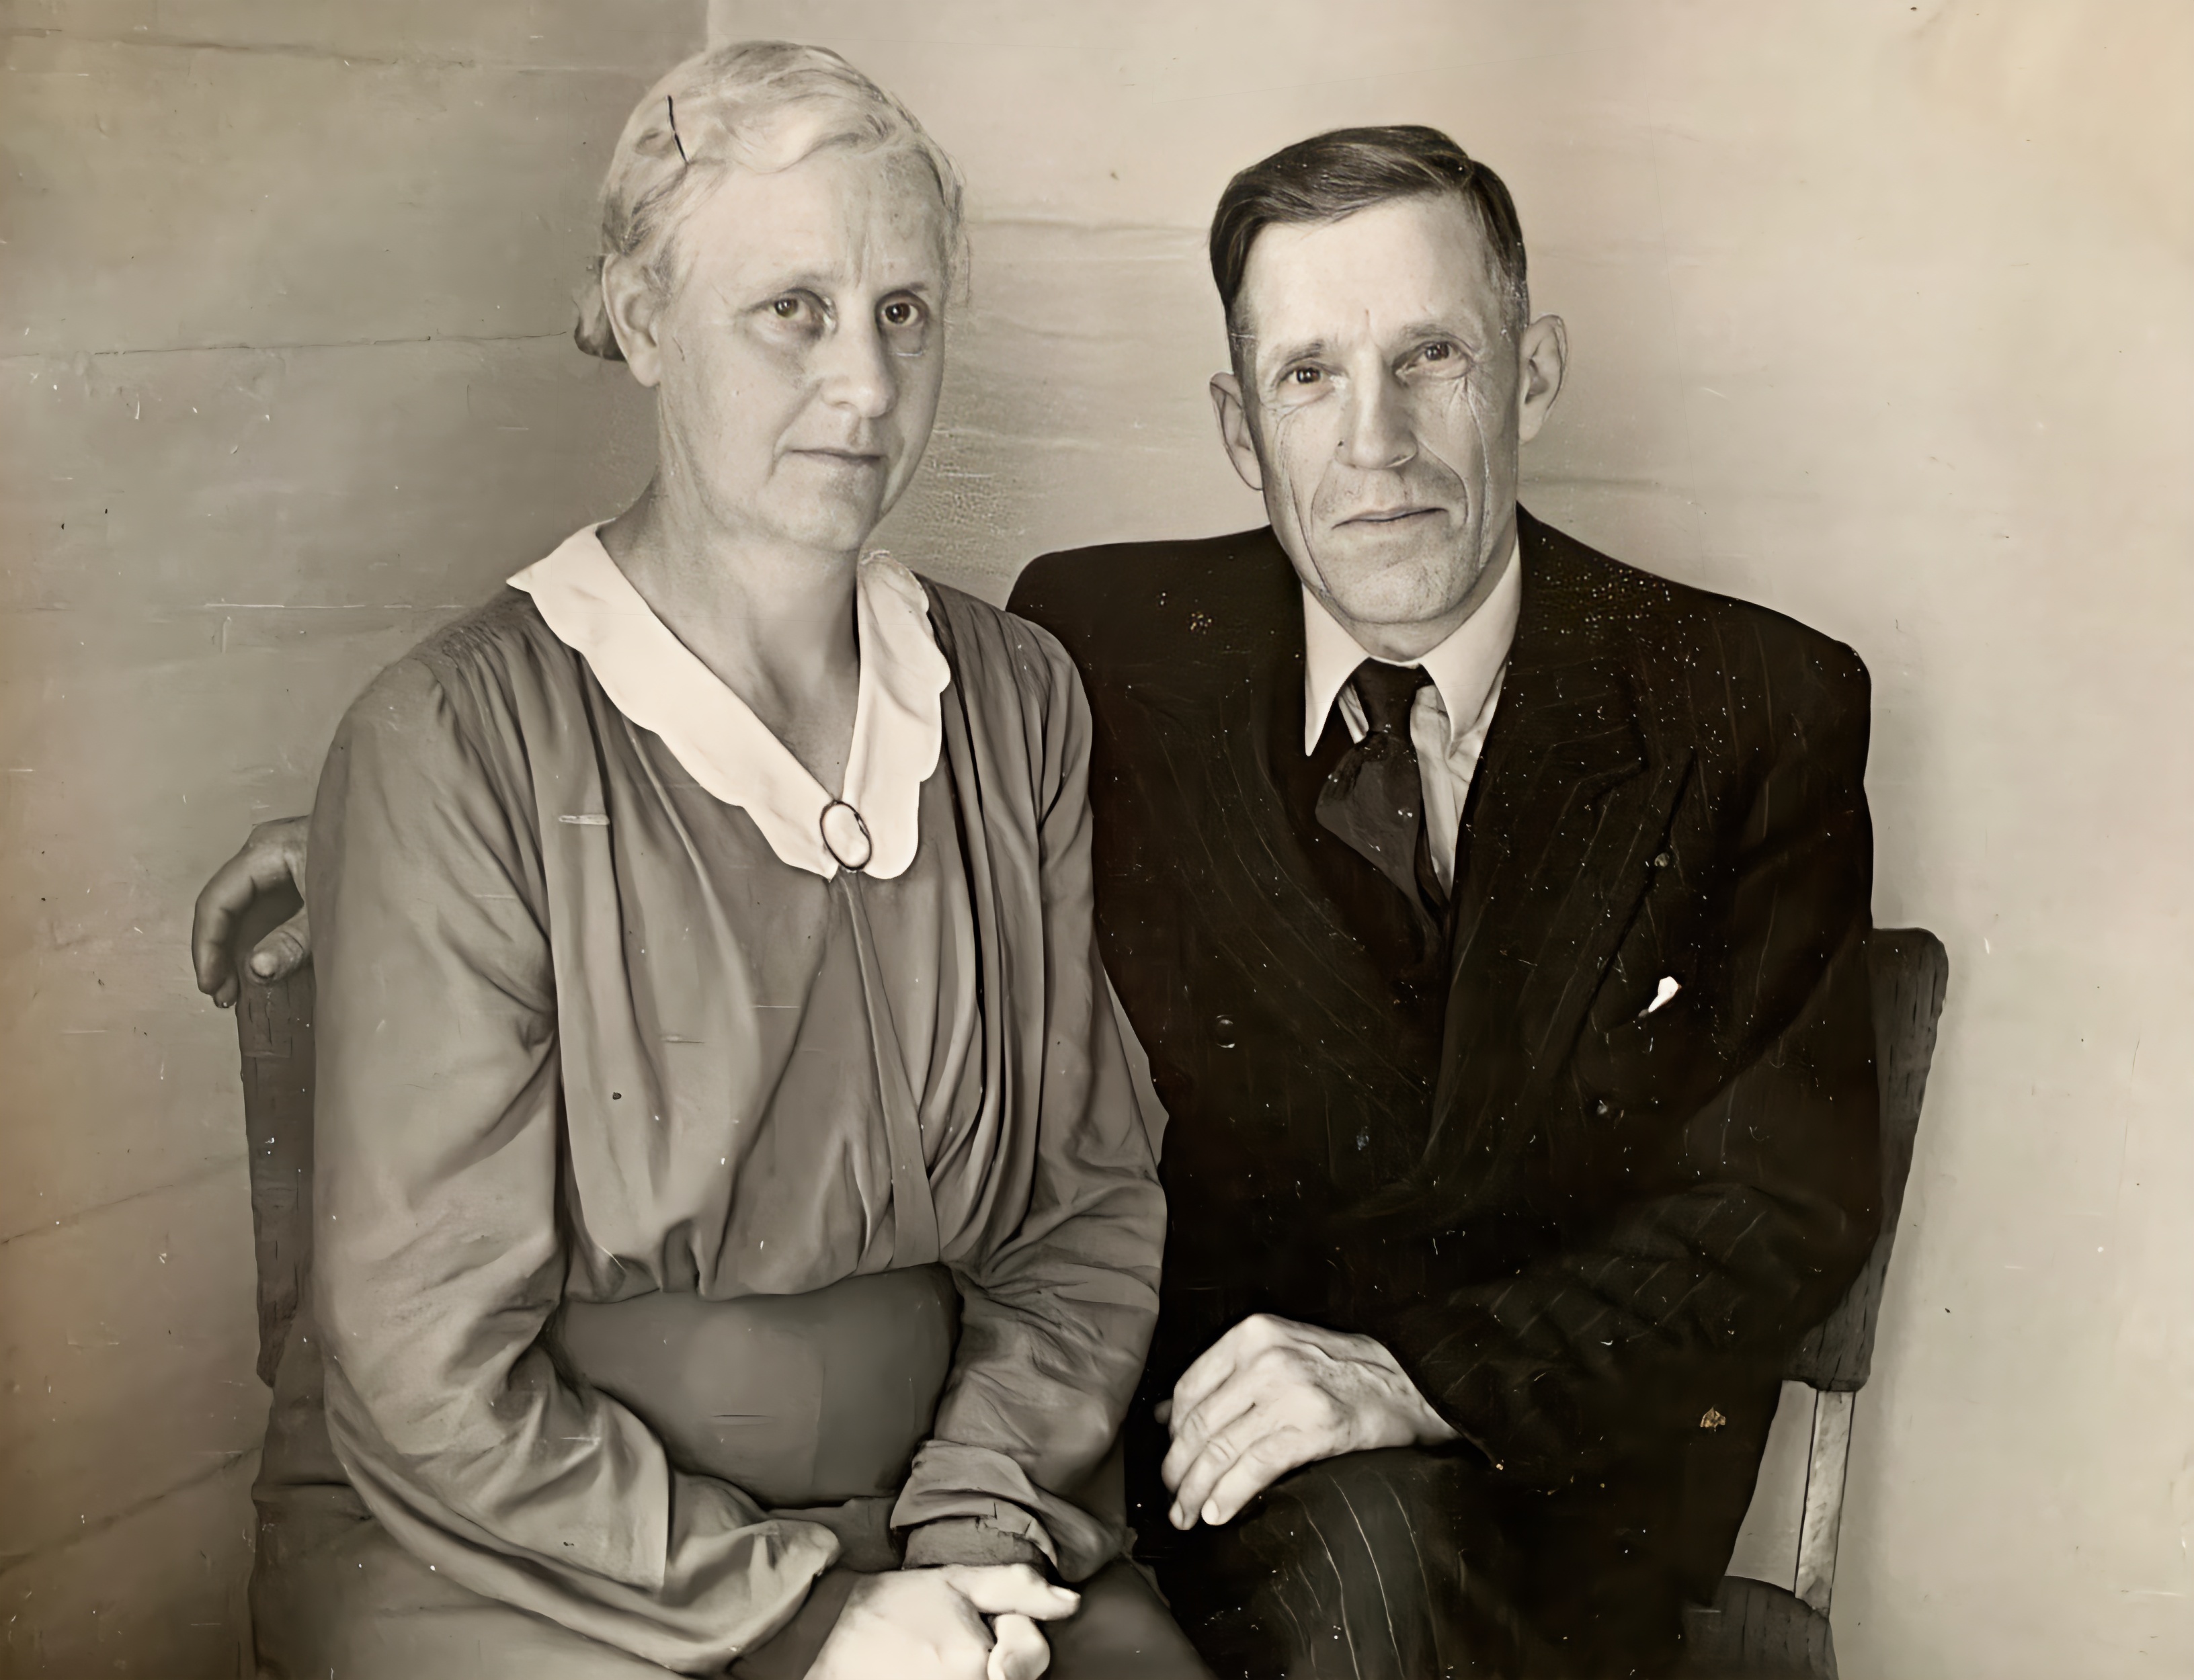 Bestemor (Olava) og bestefar (Tønnes Trøiel Tollaksvik) på Nygård (ukjent dato; 1946-1949?)